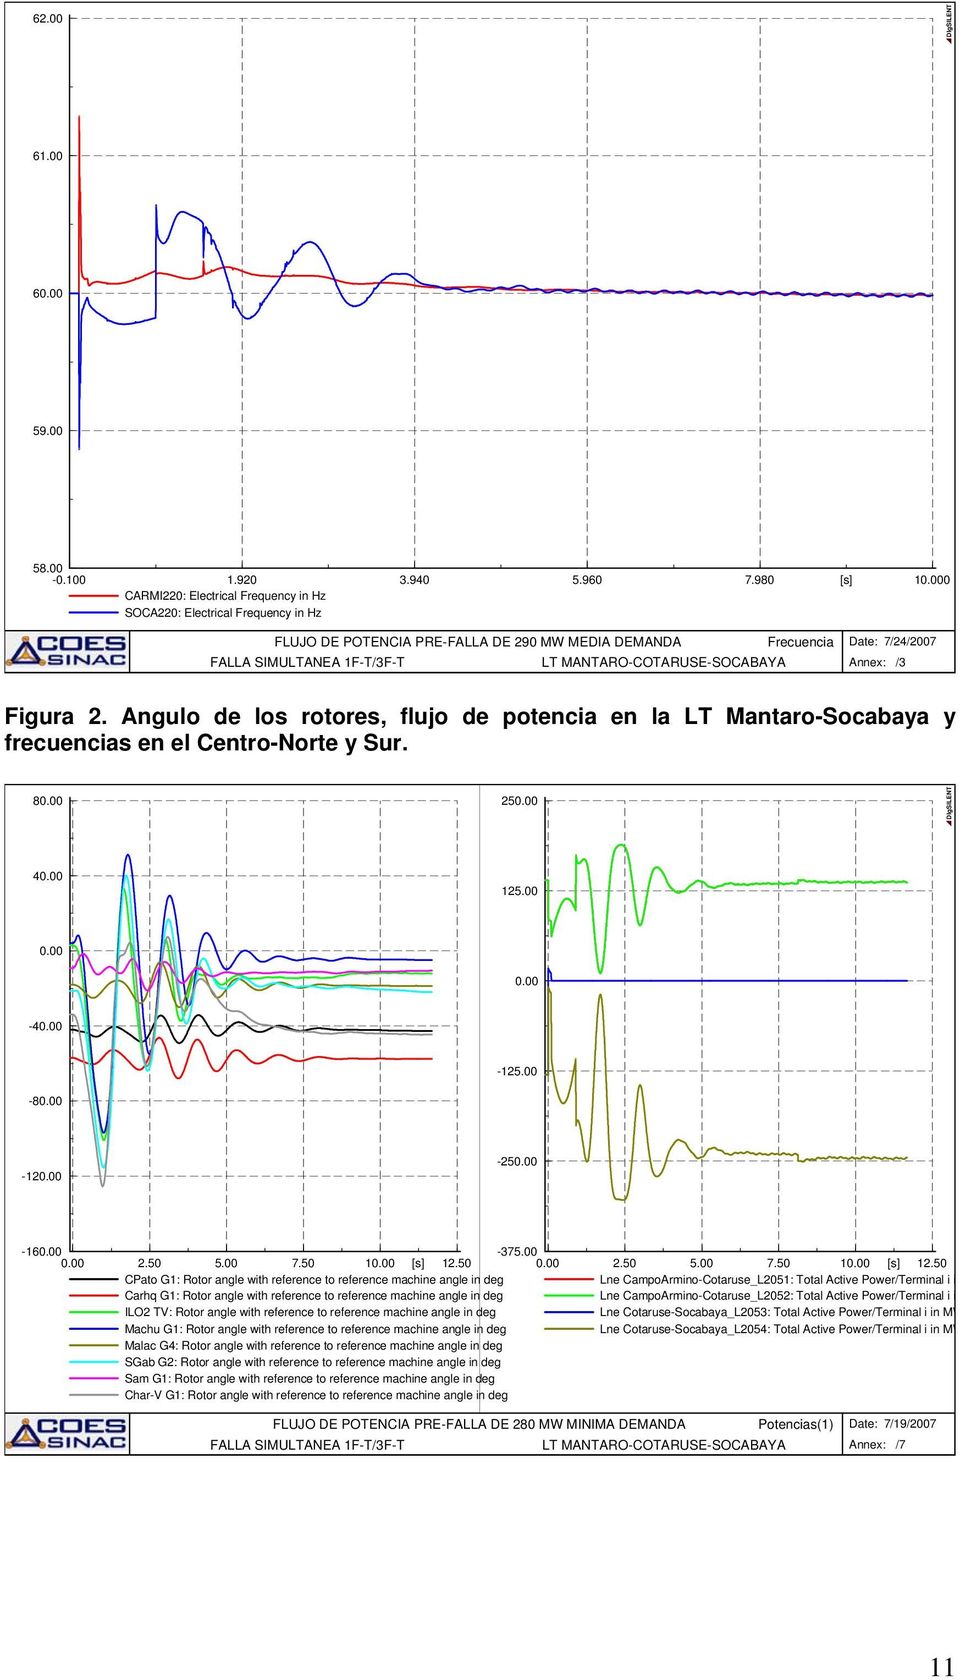 Angulo de los rotores, flujo de potencia en la LT Mantaro-Socabaya y frecuencias en el Centro-Norte y Sur. 8 25 4 125.00-4 -8-125.00-12 -25-16 -375.00 2.50 5.00 7.50 1 12.